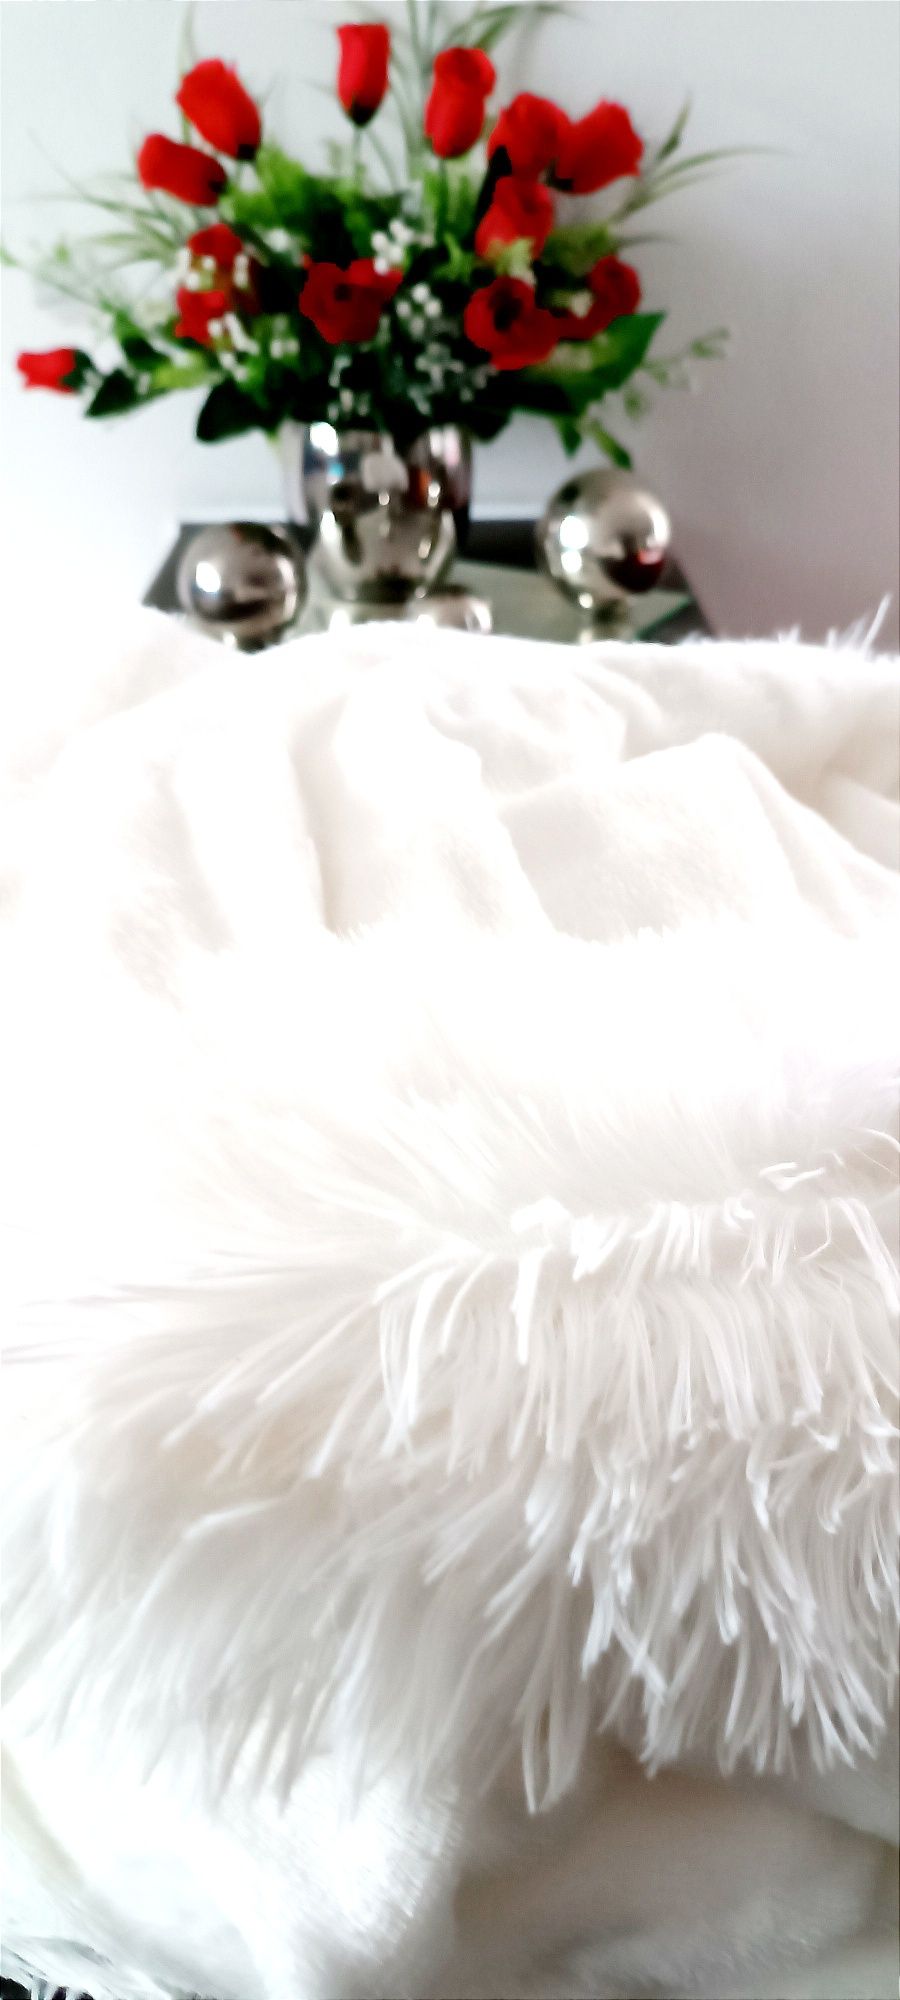 NOWA śnieżnobiała puszysta narzuta na kanapę/długi włos 220 x 240 cm